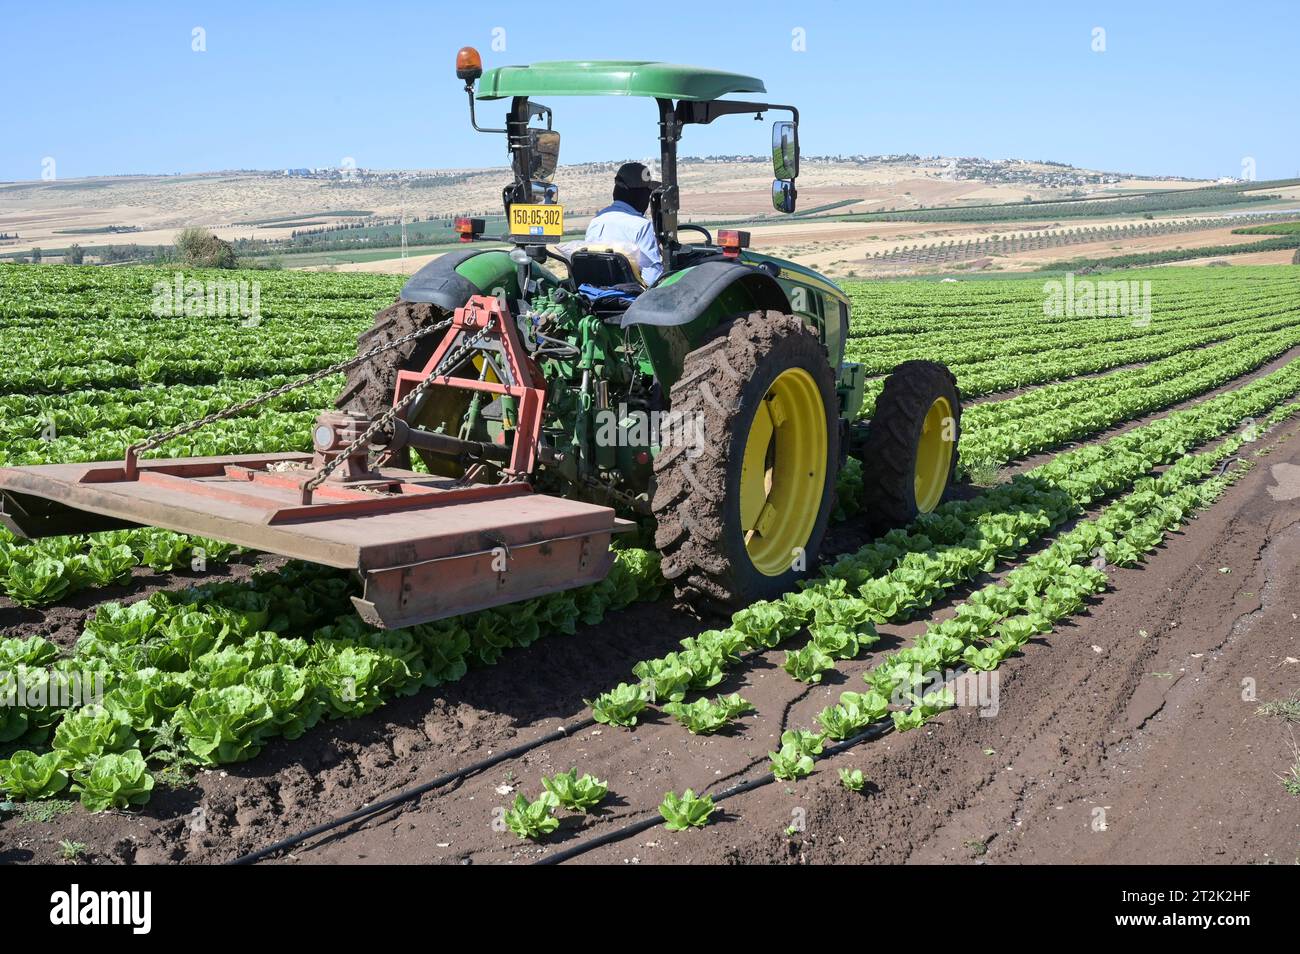 ISRAËL, Jabneel ou Jawneel ou Javneel près de Tibériade, ferme fruitière et maraîchère de 50 ha avec irrigation goutte à goutte, plantes à salade Banque D'Images